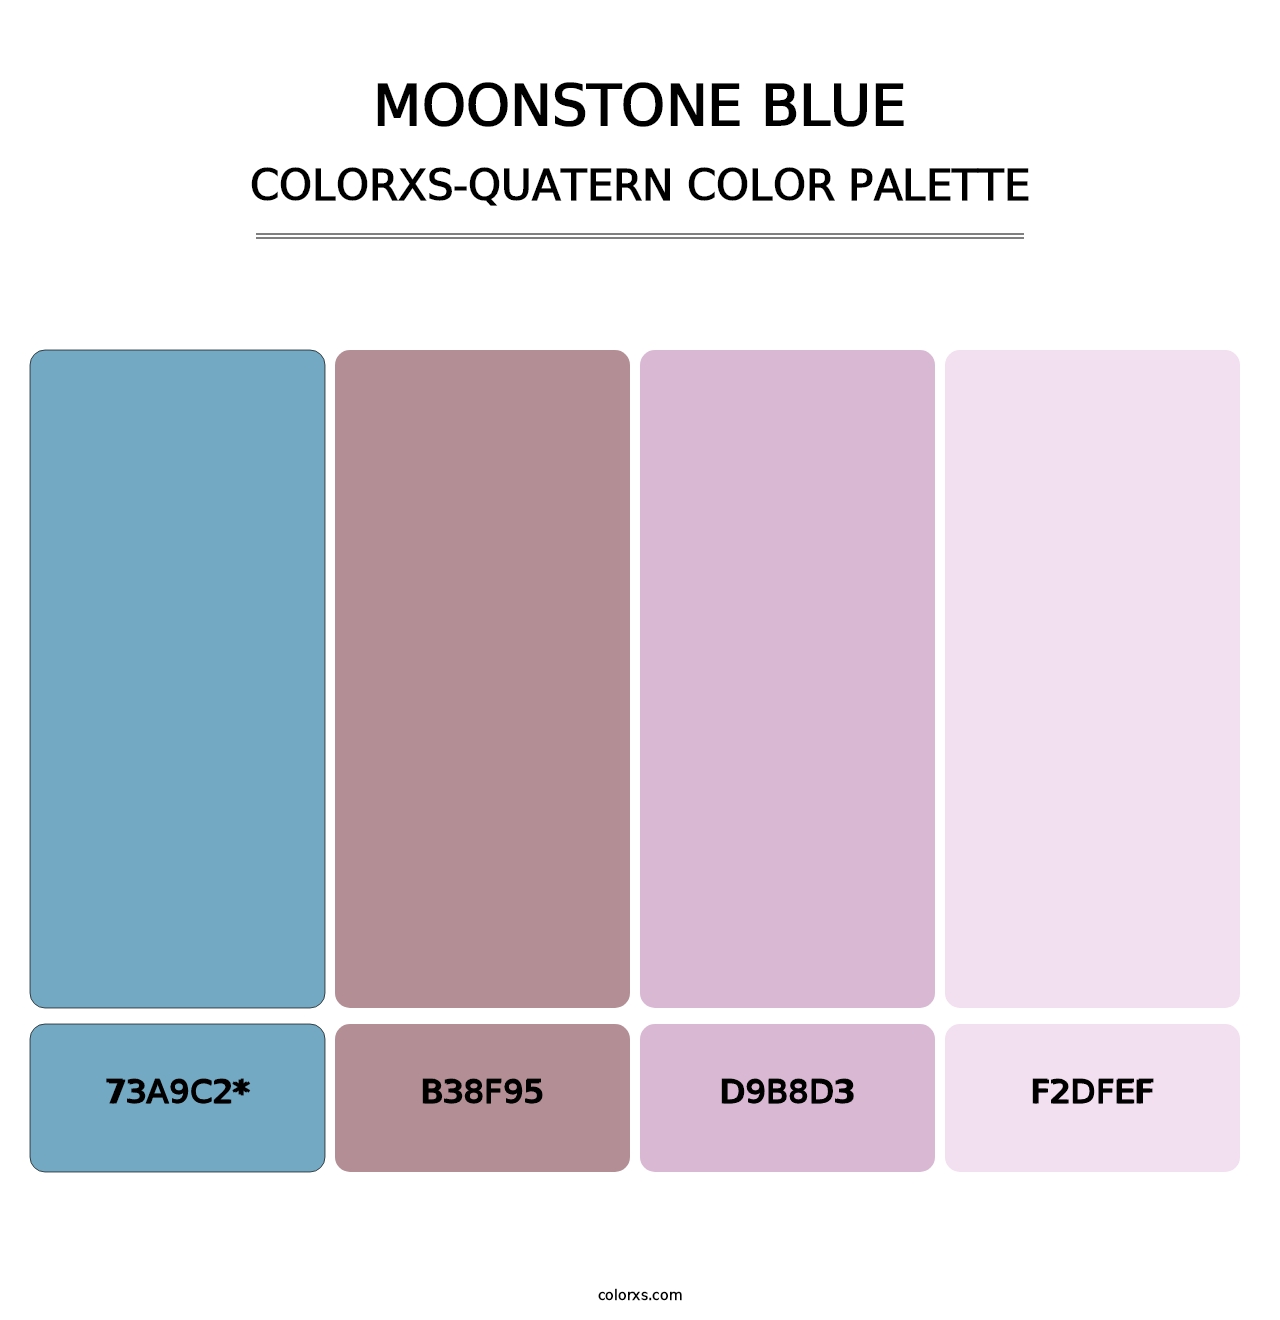 Moonstone Blue - Colorxs Quatern Palette